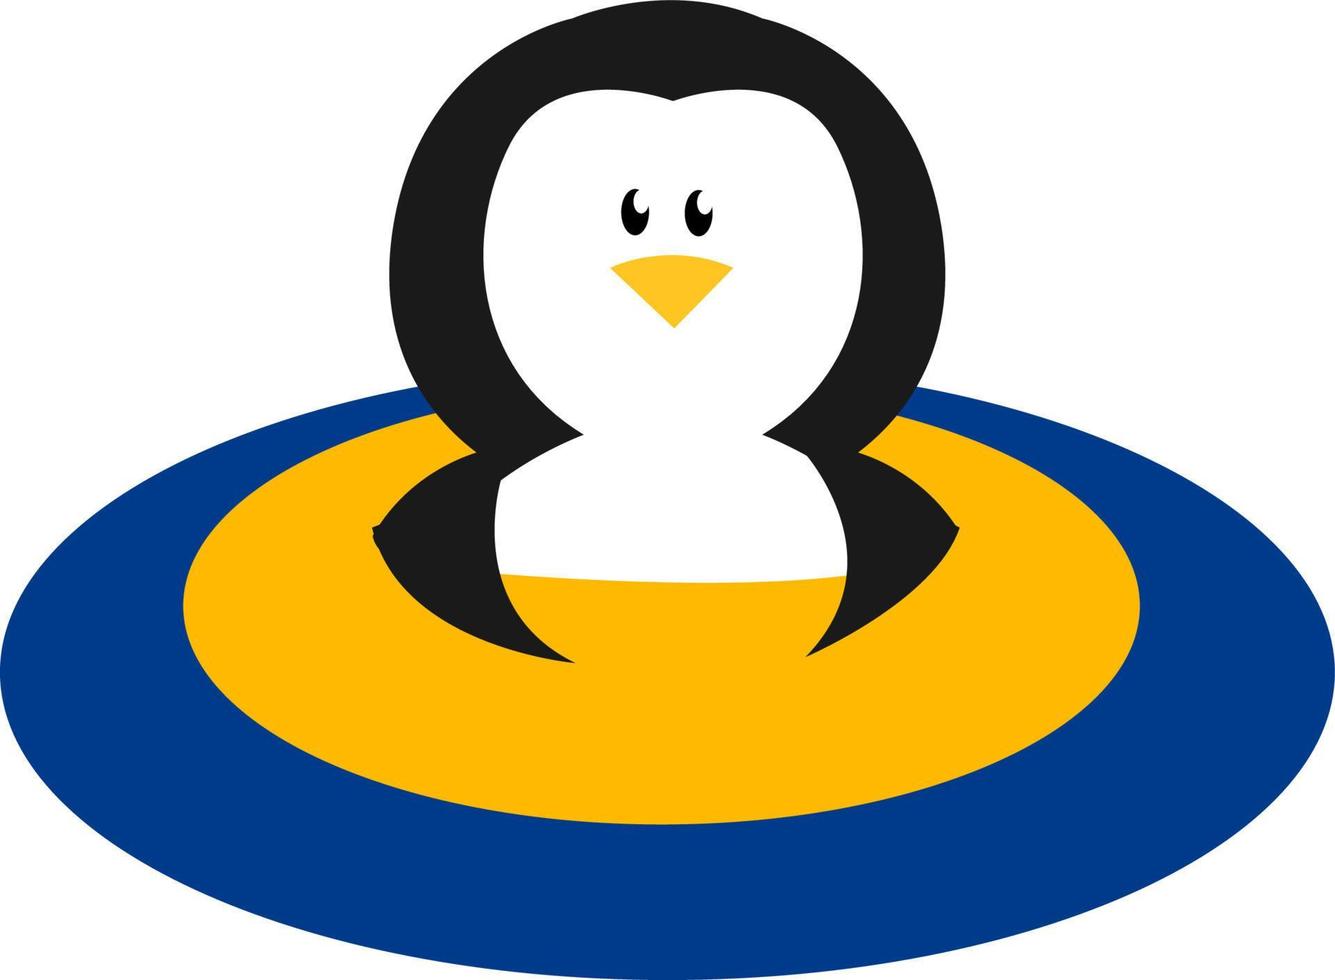 Pinguin im blauen Pool. Abbildung, Vektor auf weißem Hintergrund.